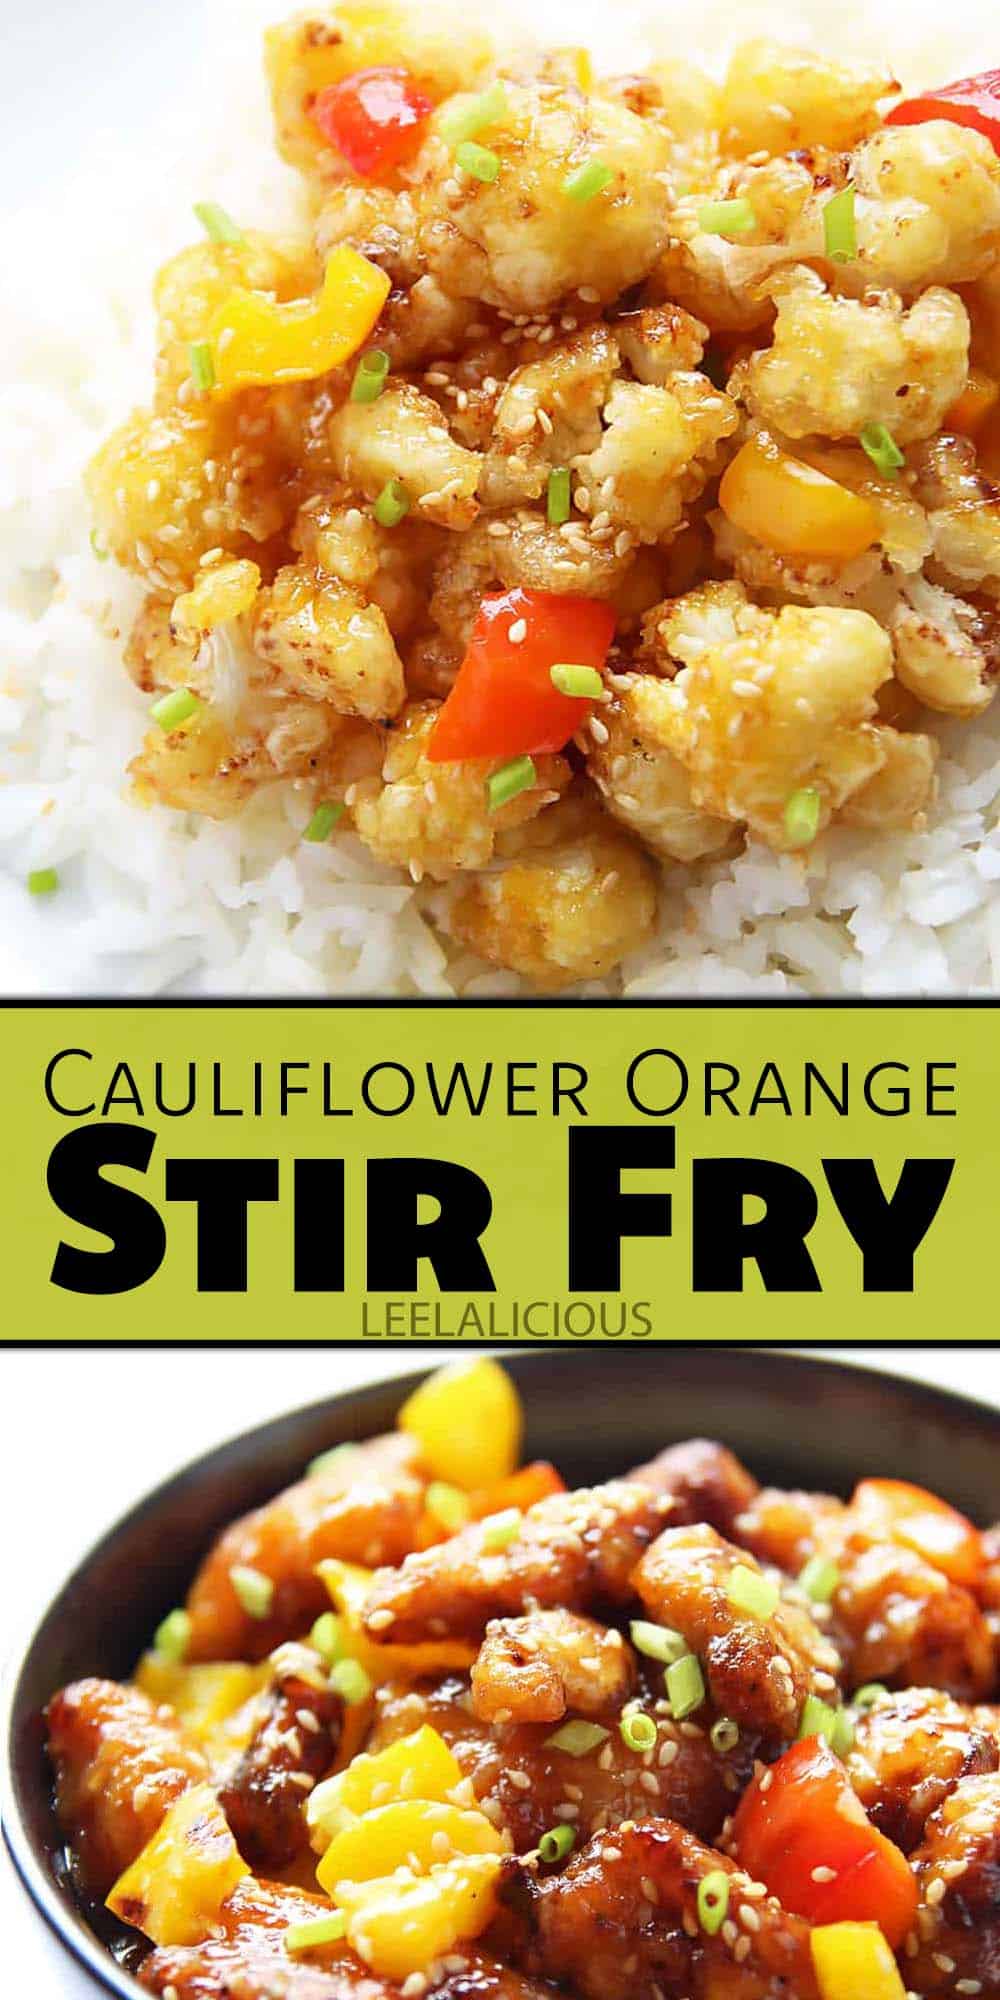 Cauliflower Orange "Chicken" Stir Fry